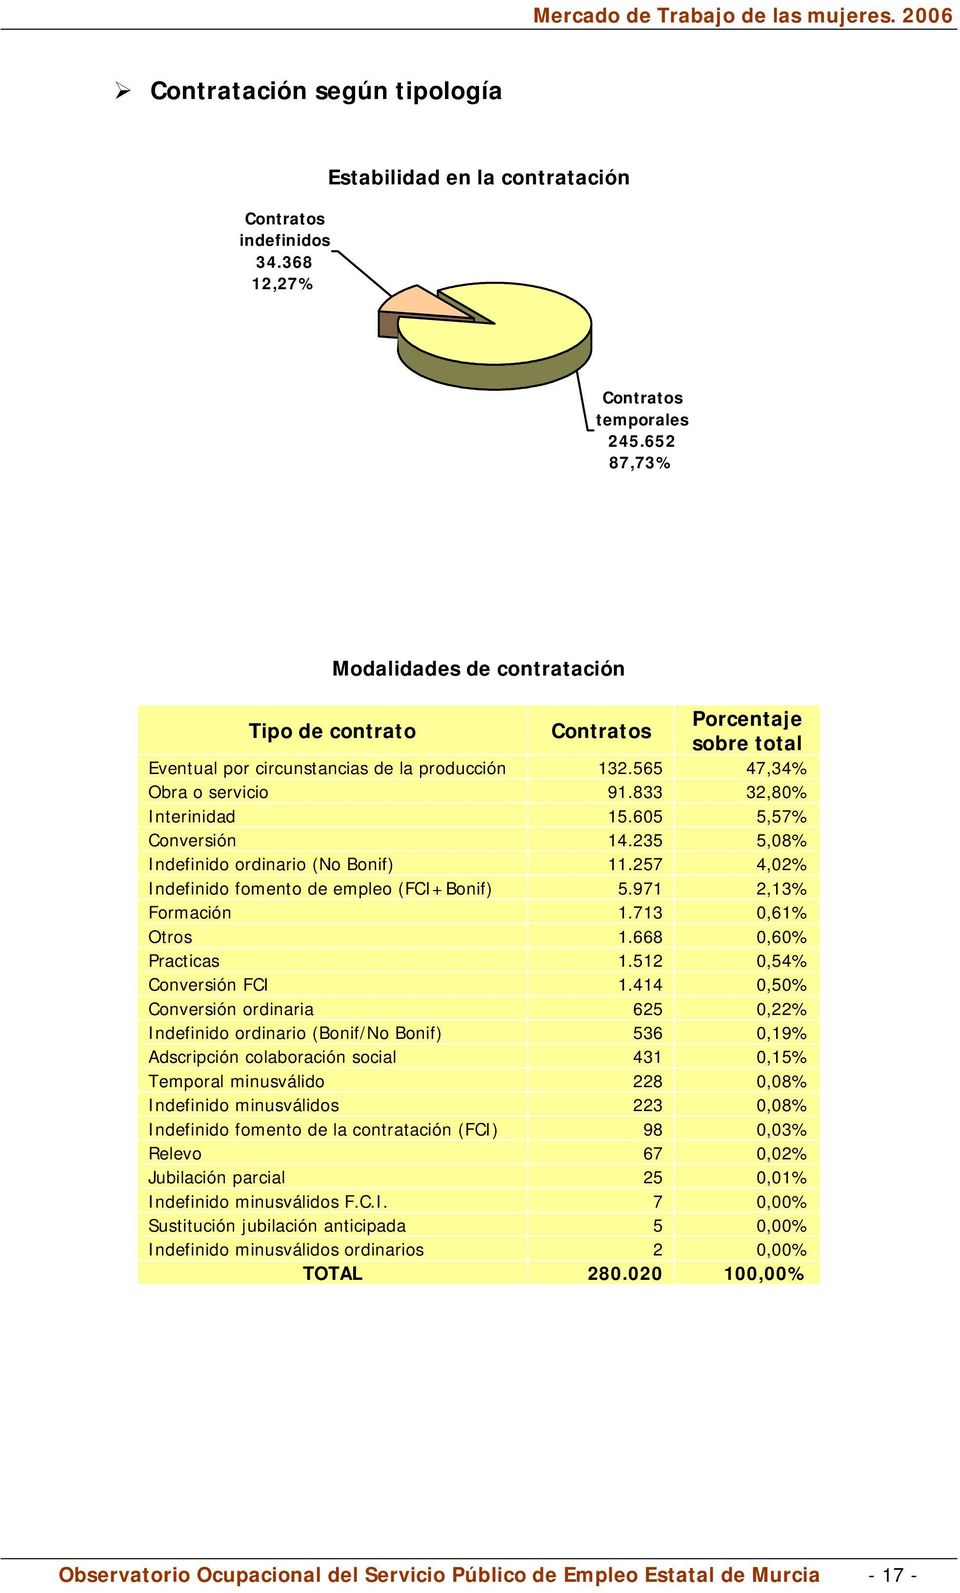 605 5,57% Conversión 14.235 5,08% Indefinido ordinario (No Bonif) 11.257 4,02% Indefinido fomento de empleo (FCI+Bonif) 5.971 2,13% Formación 1.713 0,61% Otros 1.668 0,60% Practicas 1.